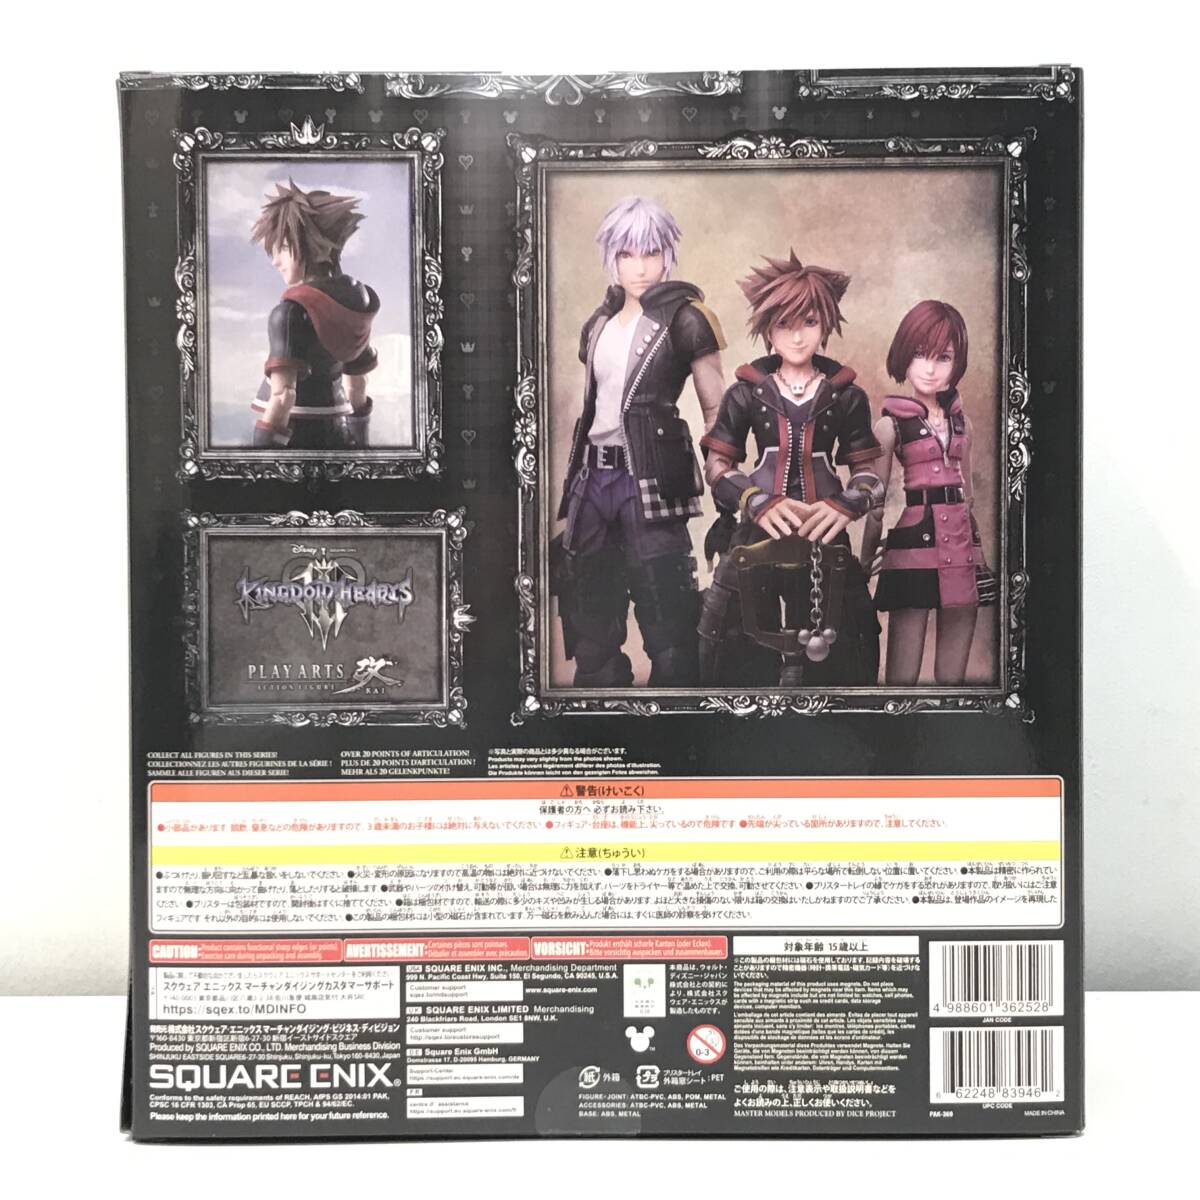 * не использовался товар * SQUARE ENIXsk одежда * enix фигурка Kingdom Hearts III PLAY ARTS модифицировано solaVer.2 нераспечатанный товар 